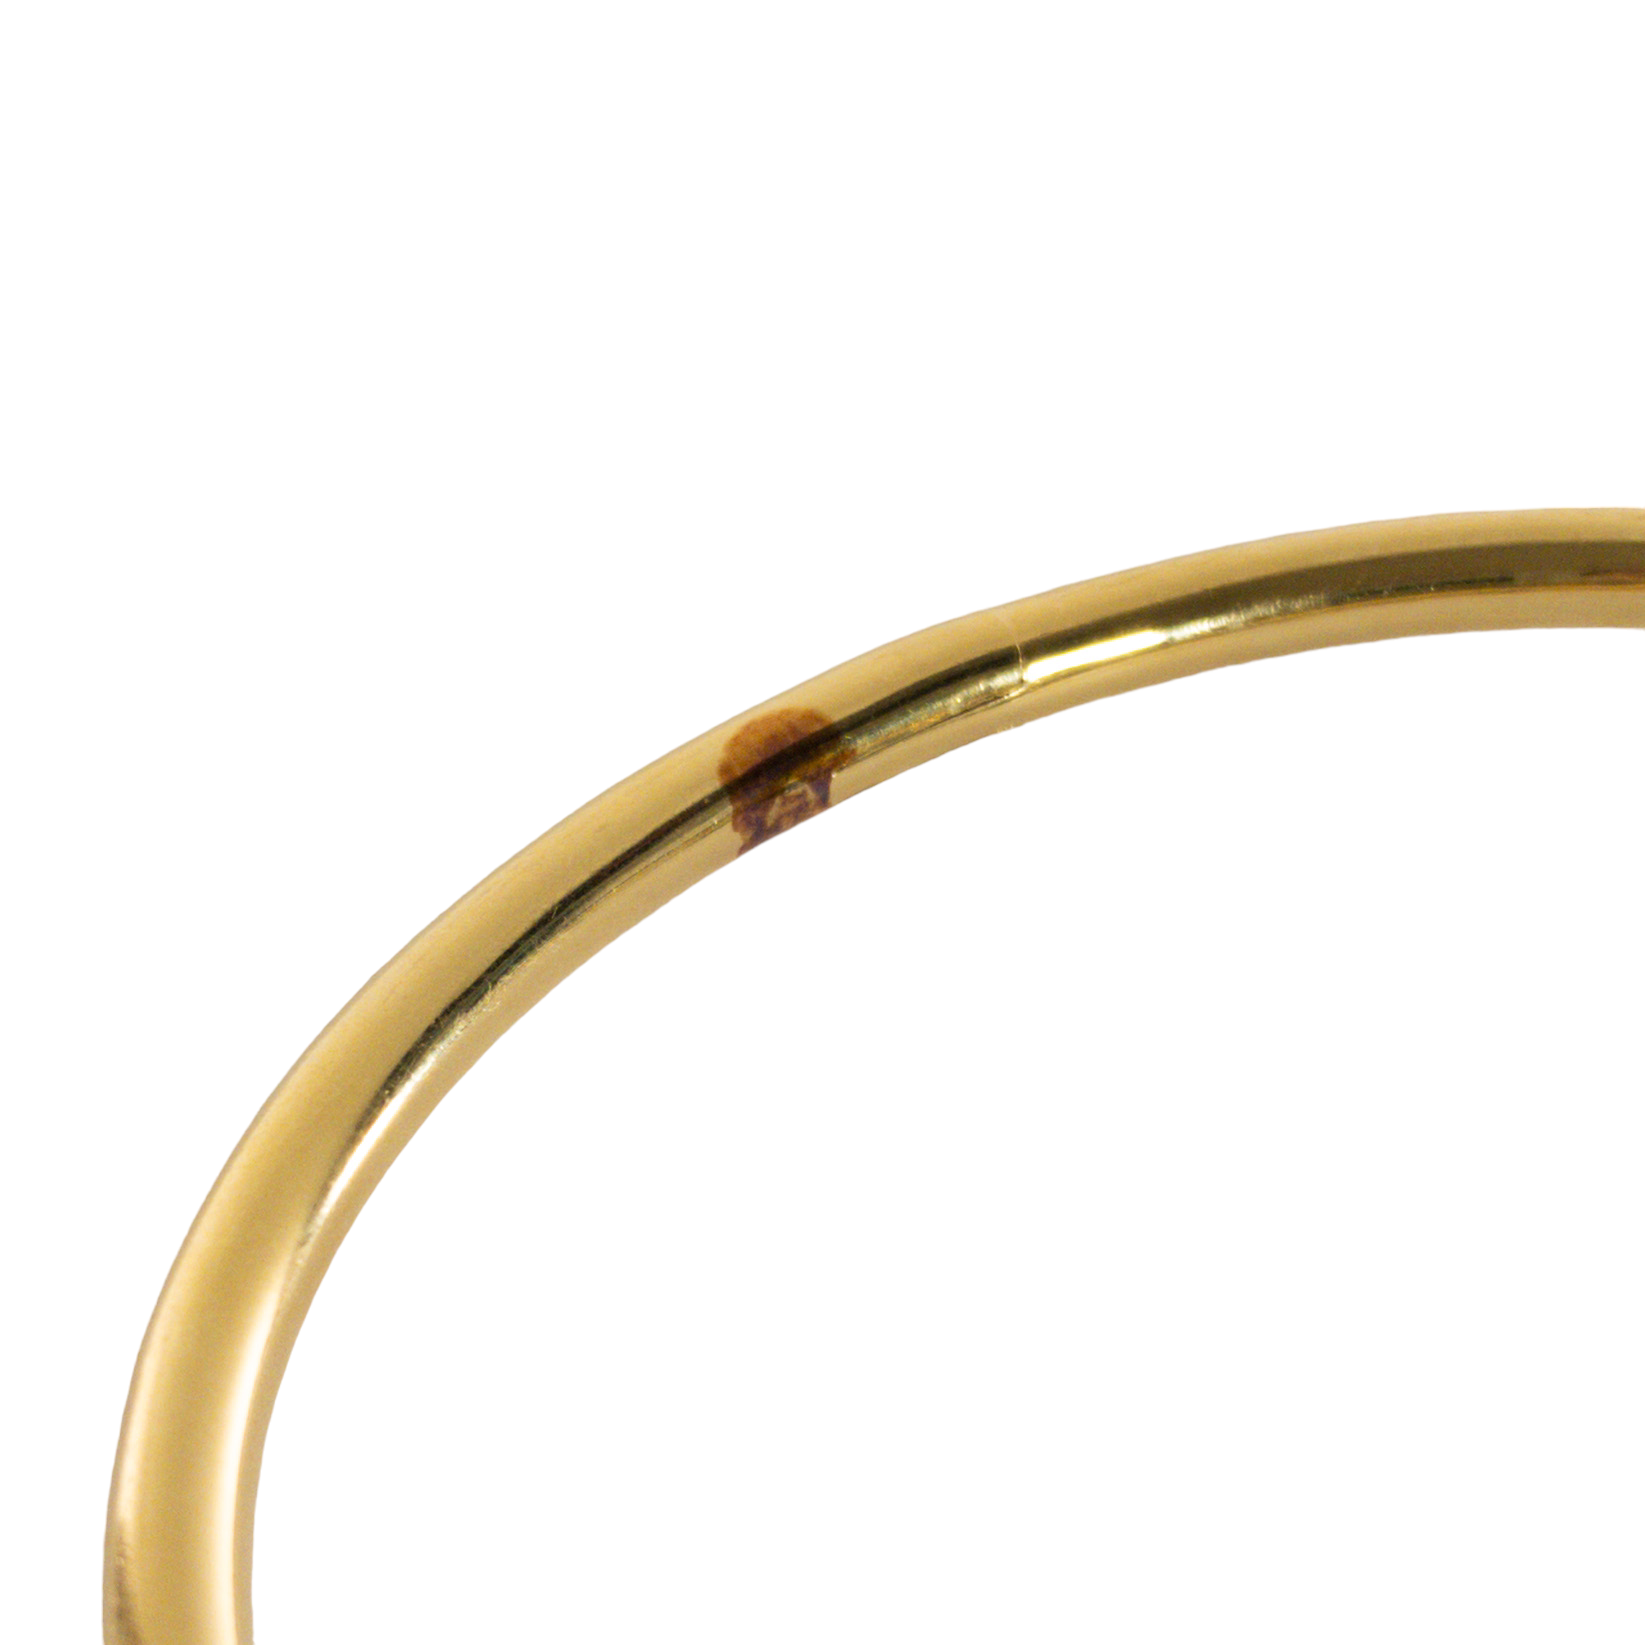 Cartier Juste un Clou Rose Gold Diamond Bracelet – CIRCA